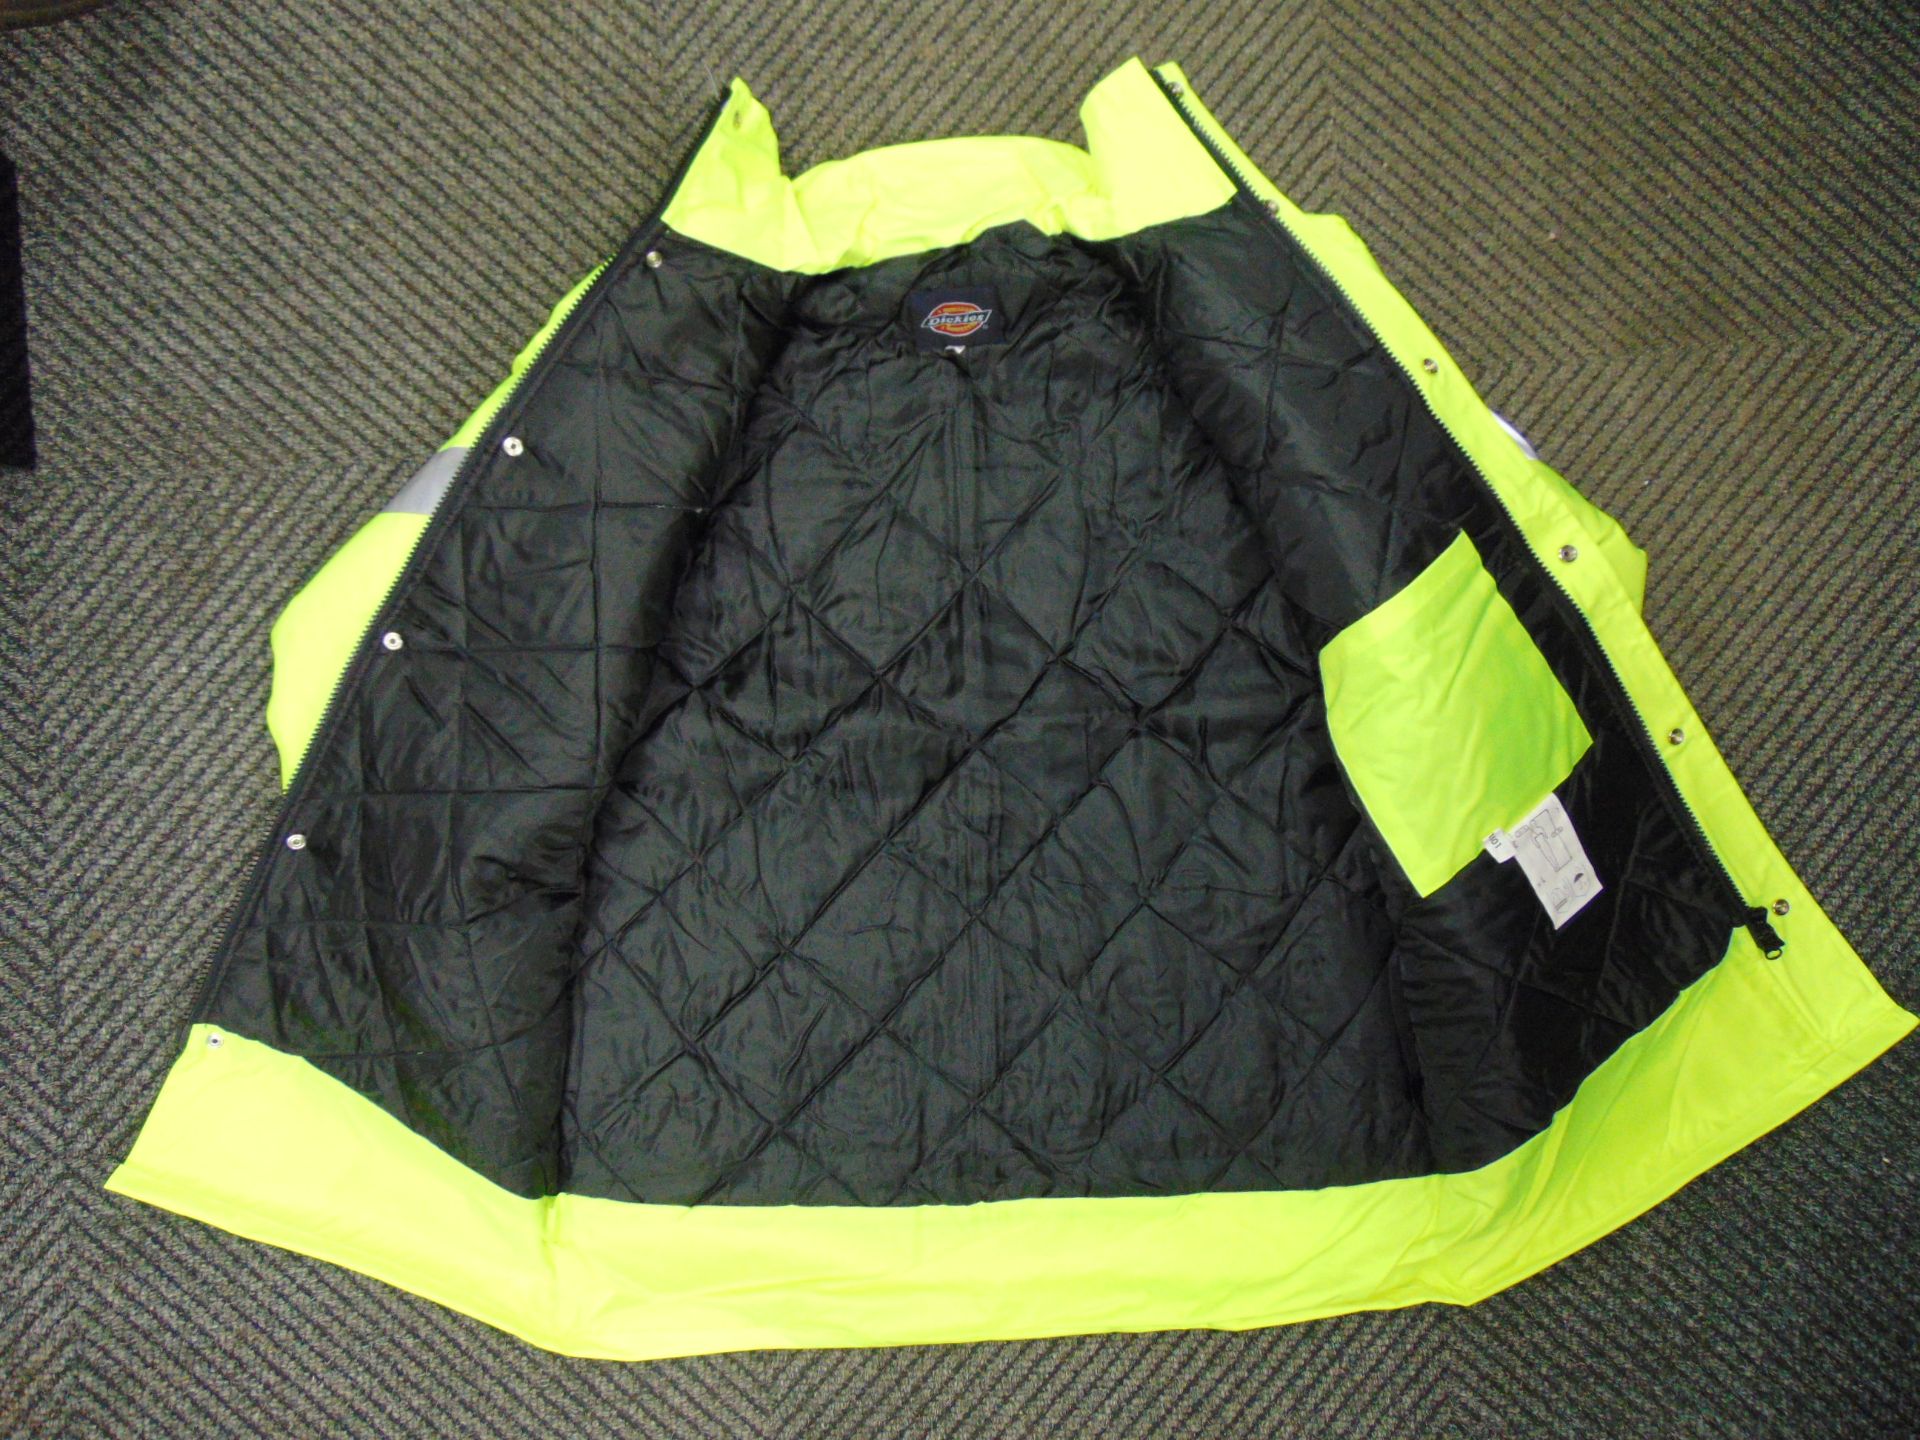 UNISSUED Hi Visibility Florescent SECURITY Jacket. Size Medium. - Image 3 of 5